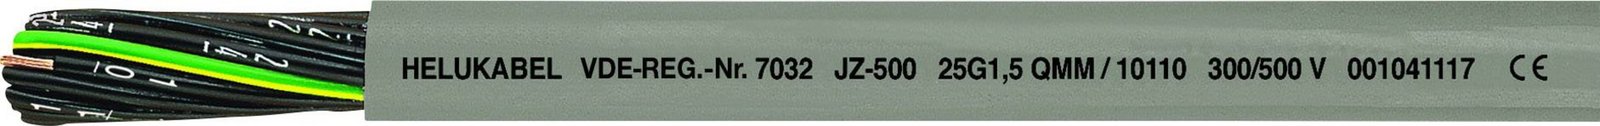 Helukabel JZ-500 řídicí kabel 5 G 1.50 mm² šedá 10095 metrové zboží